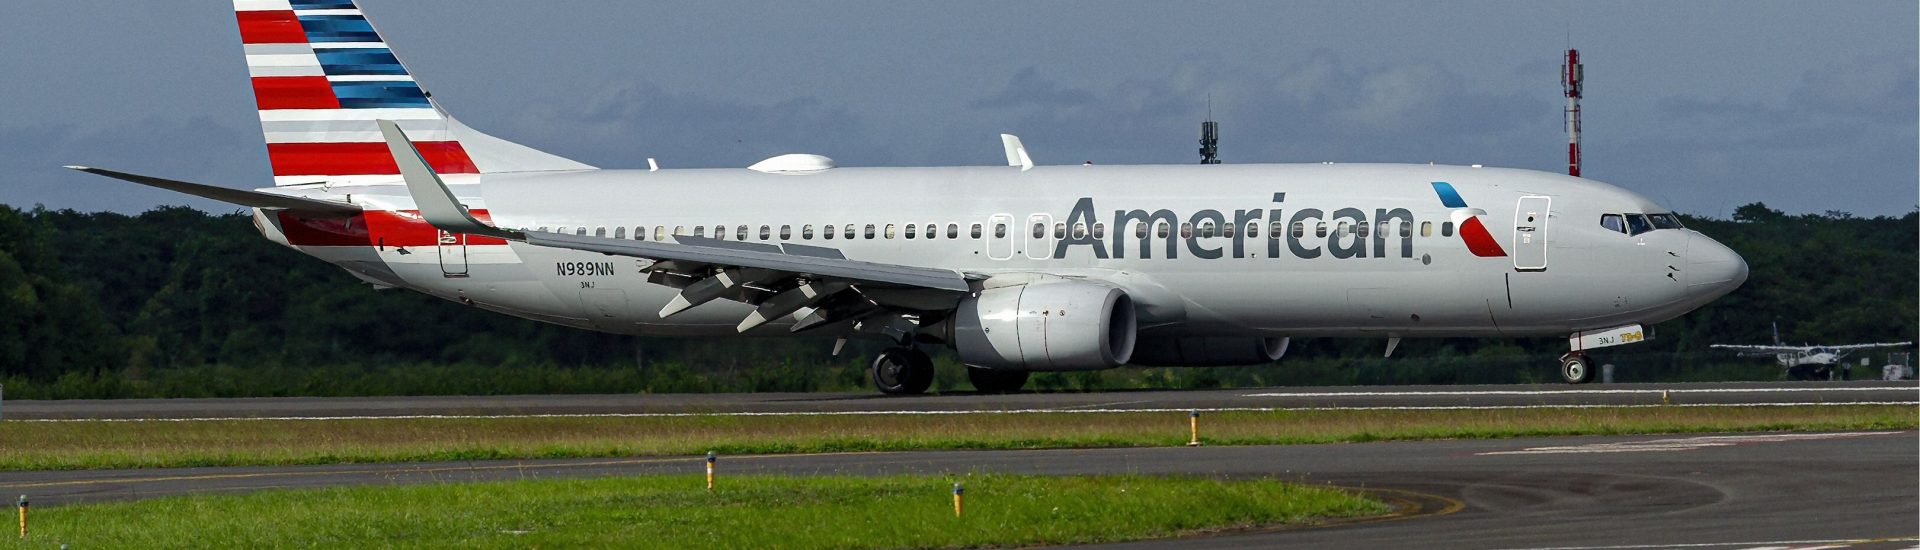 B737-800 American Airlines N989NN